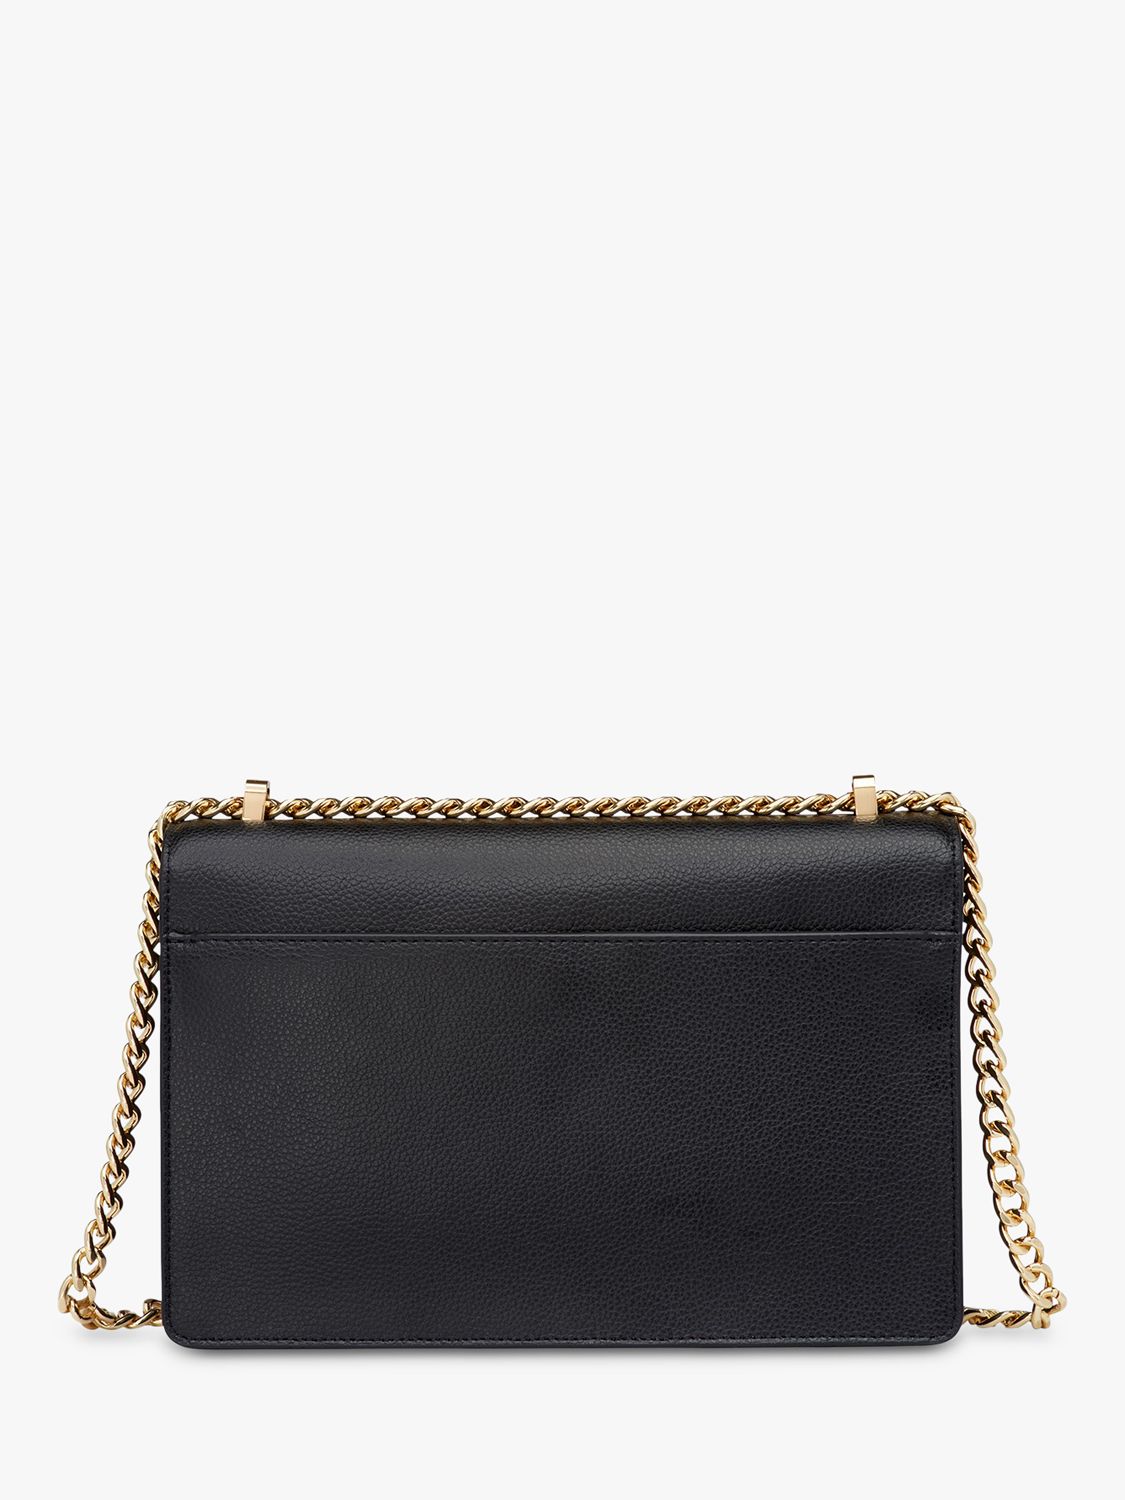 DKNY Elissa Large Leather Shoulder Bag, Black/Gold at John Lewis & Partners